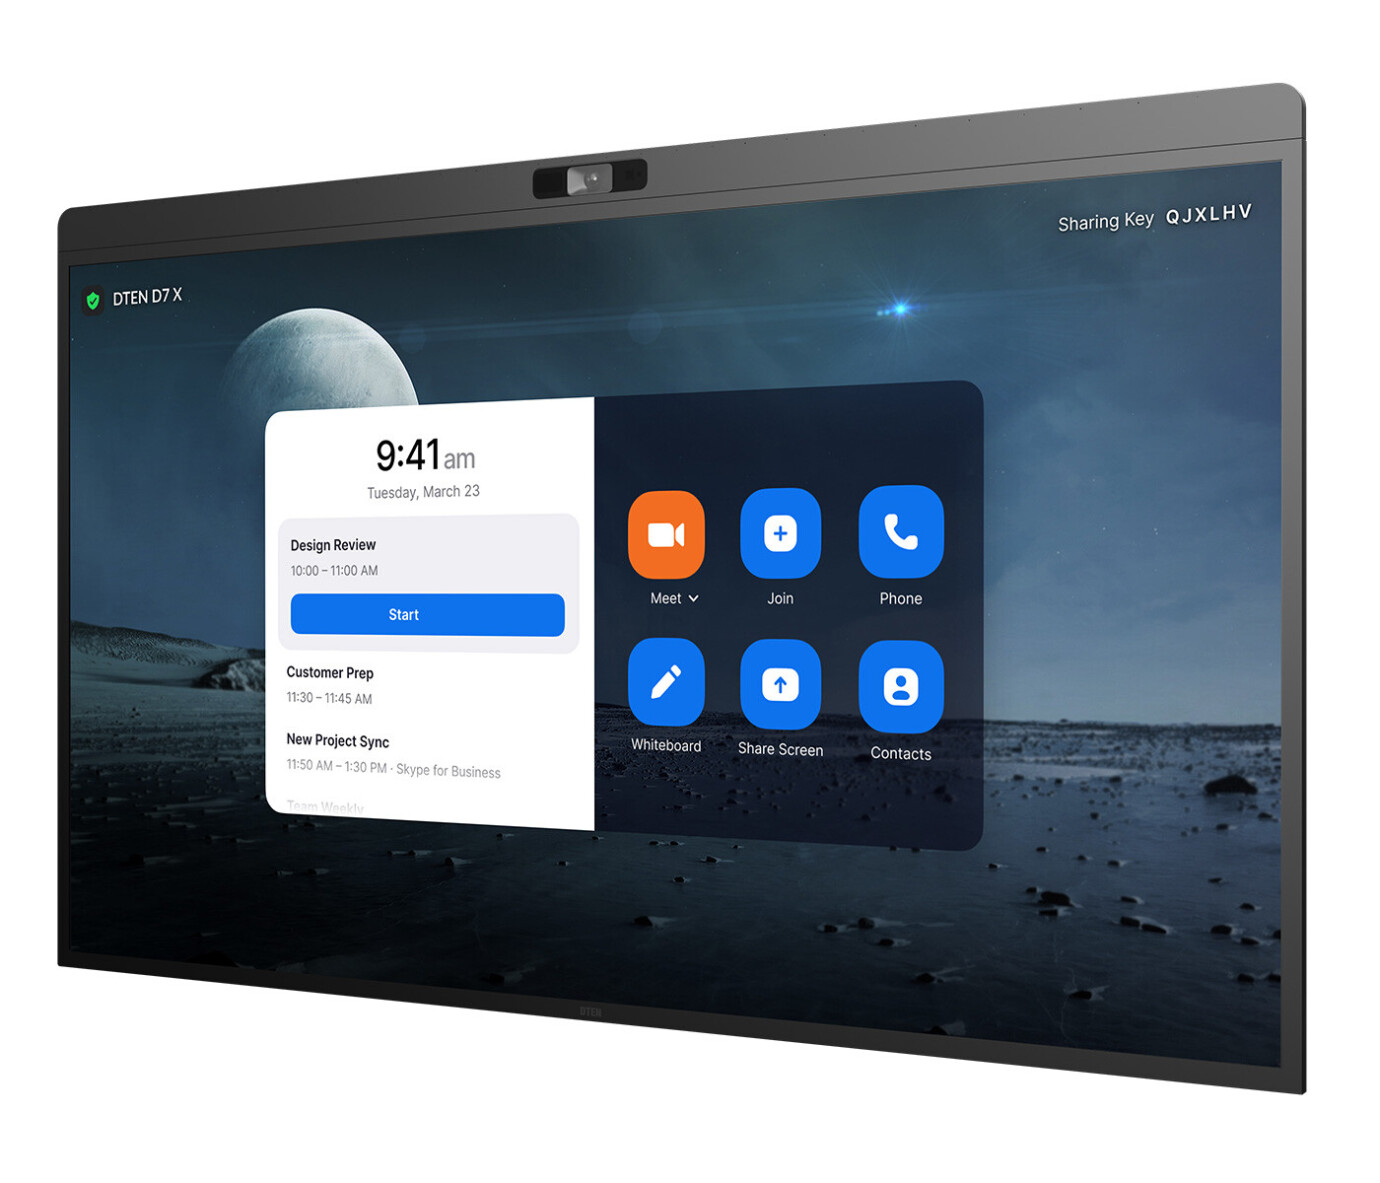 Vorschau: DTEN D7X 75" All-in-One Videokonferenz Multi-Touch Display mit 4K Auflösung